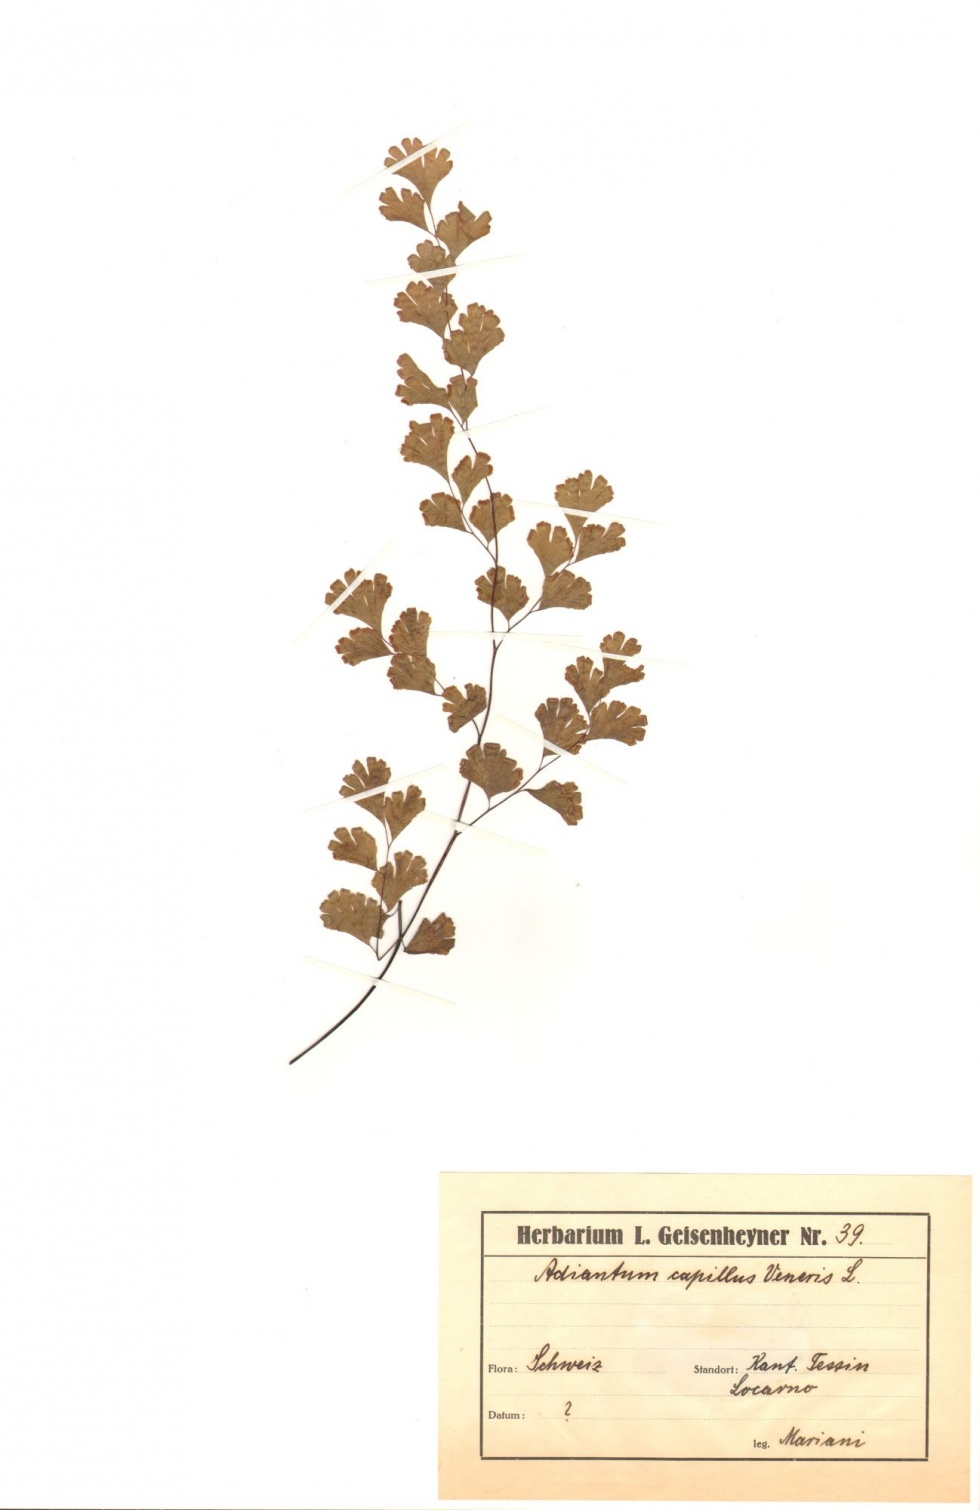 Frauenhaarfarn - Adiantum capillus-veneris L. (Naturhistorisches Museum Mainz / Landessammlung für Naturkunde Rheinland-Pfalz CC BY-NC-SA)